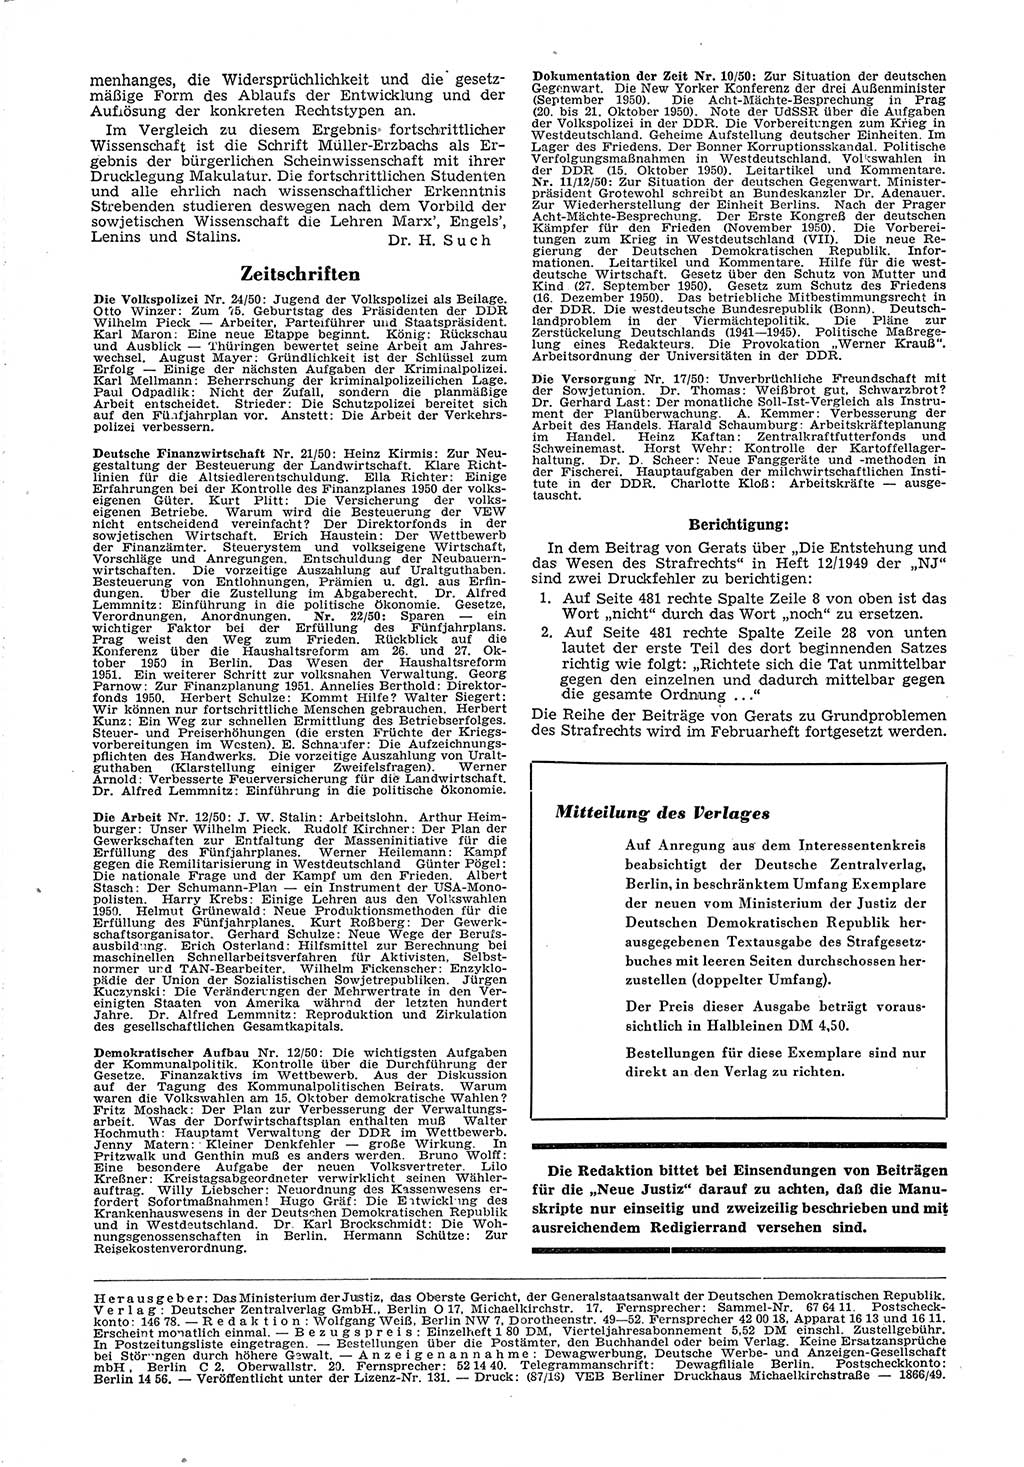 Neue Justiz (NJ), Zeitschrift für Recht und Rechtswissenschaft [Deutsche Demokratische Republik (DDR)], 5. Jahrgang 1951, Seite 48 (NJ DDR 1951, S. 48)